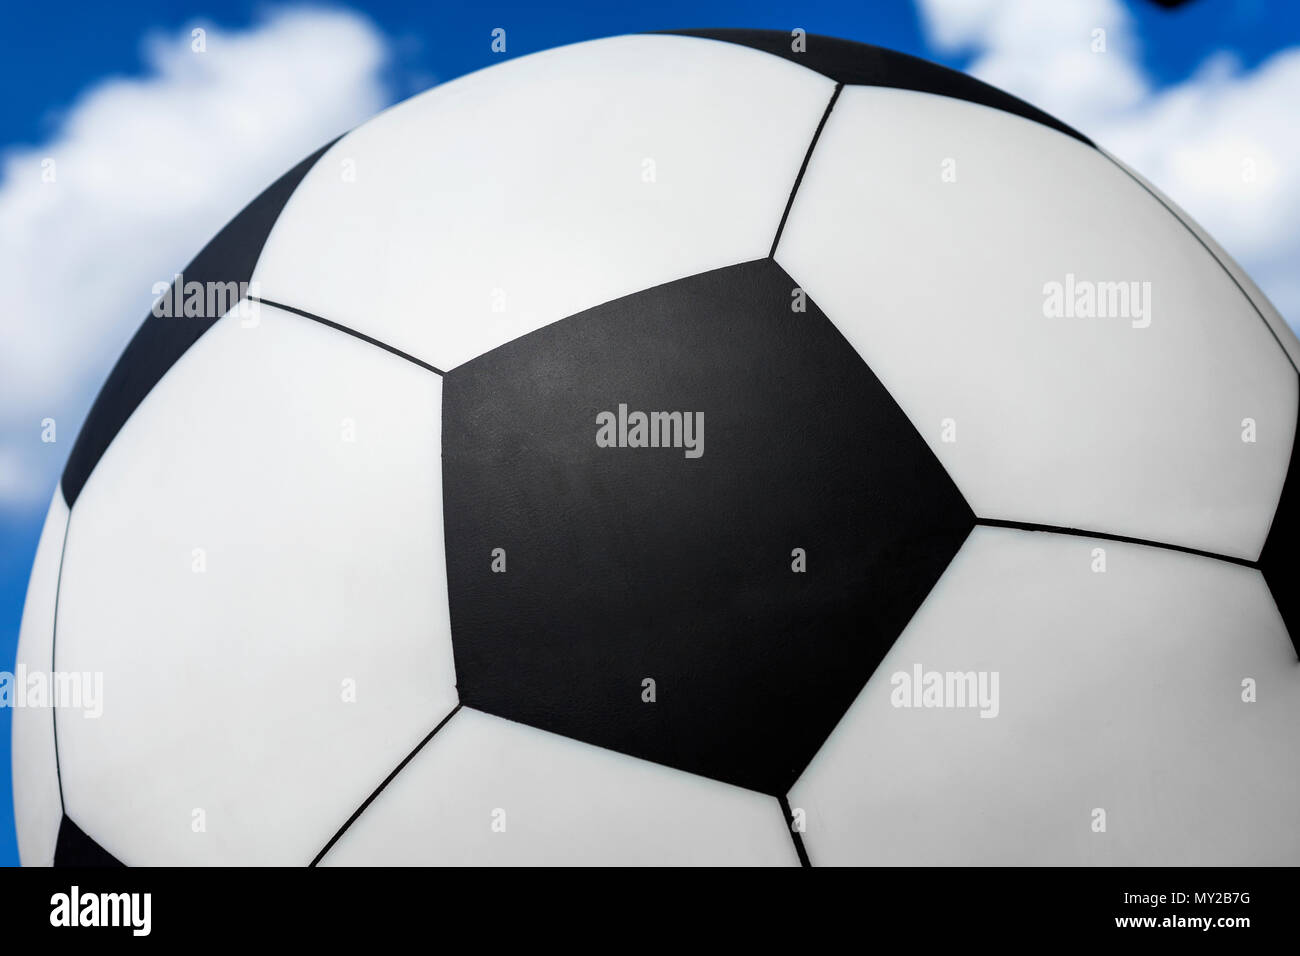 Ballon de football contre le ciel bleu avec des nuages blancs, la texture, l'arrière-plan pour le sport Banque D'Images